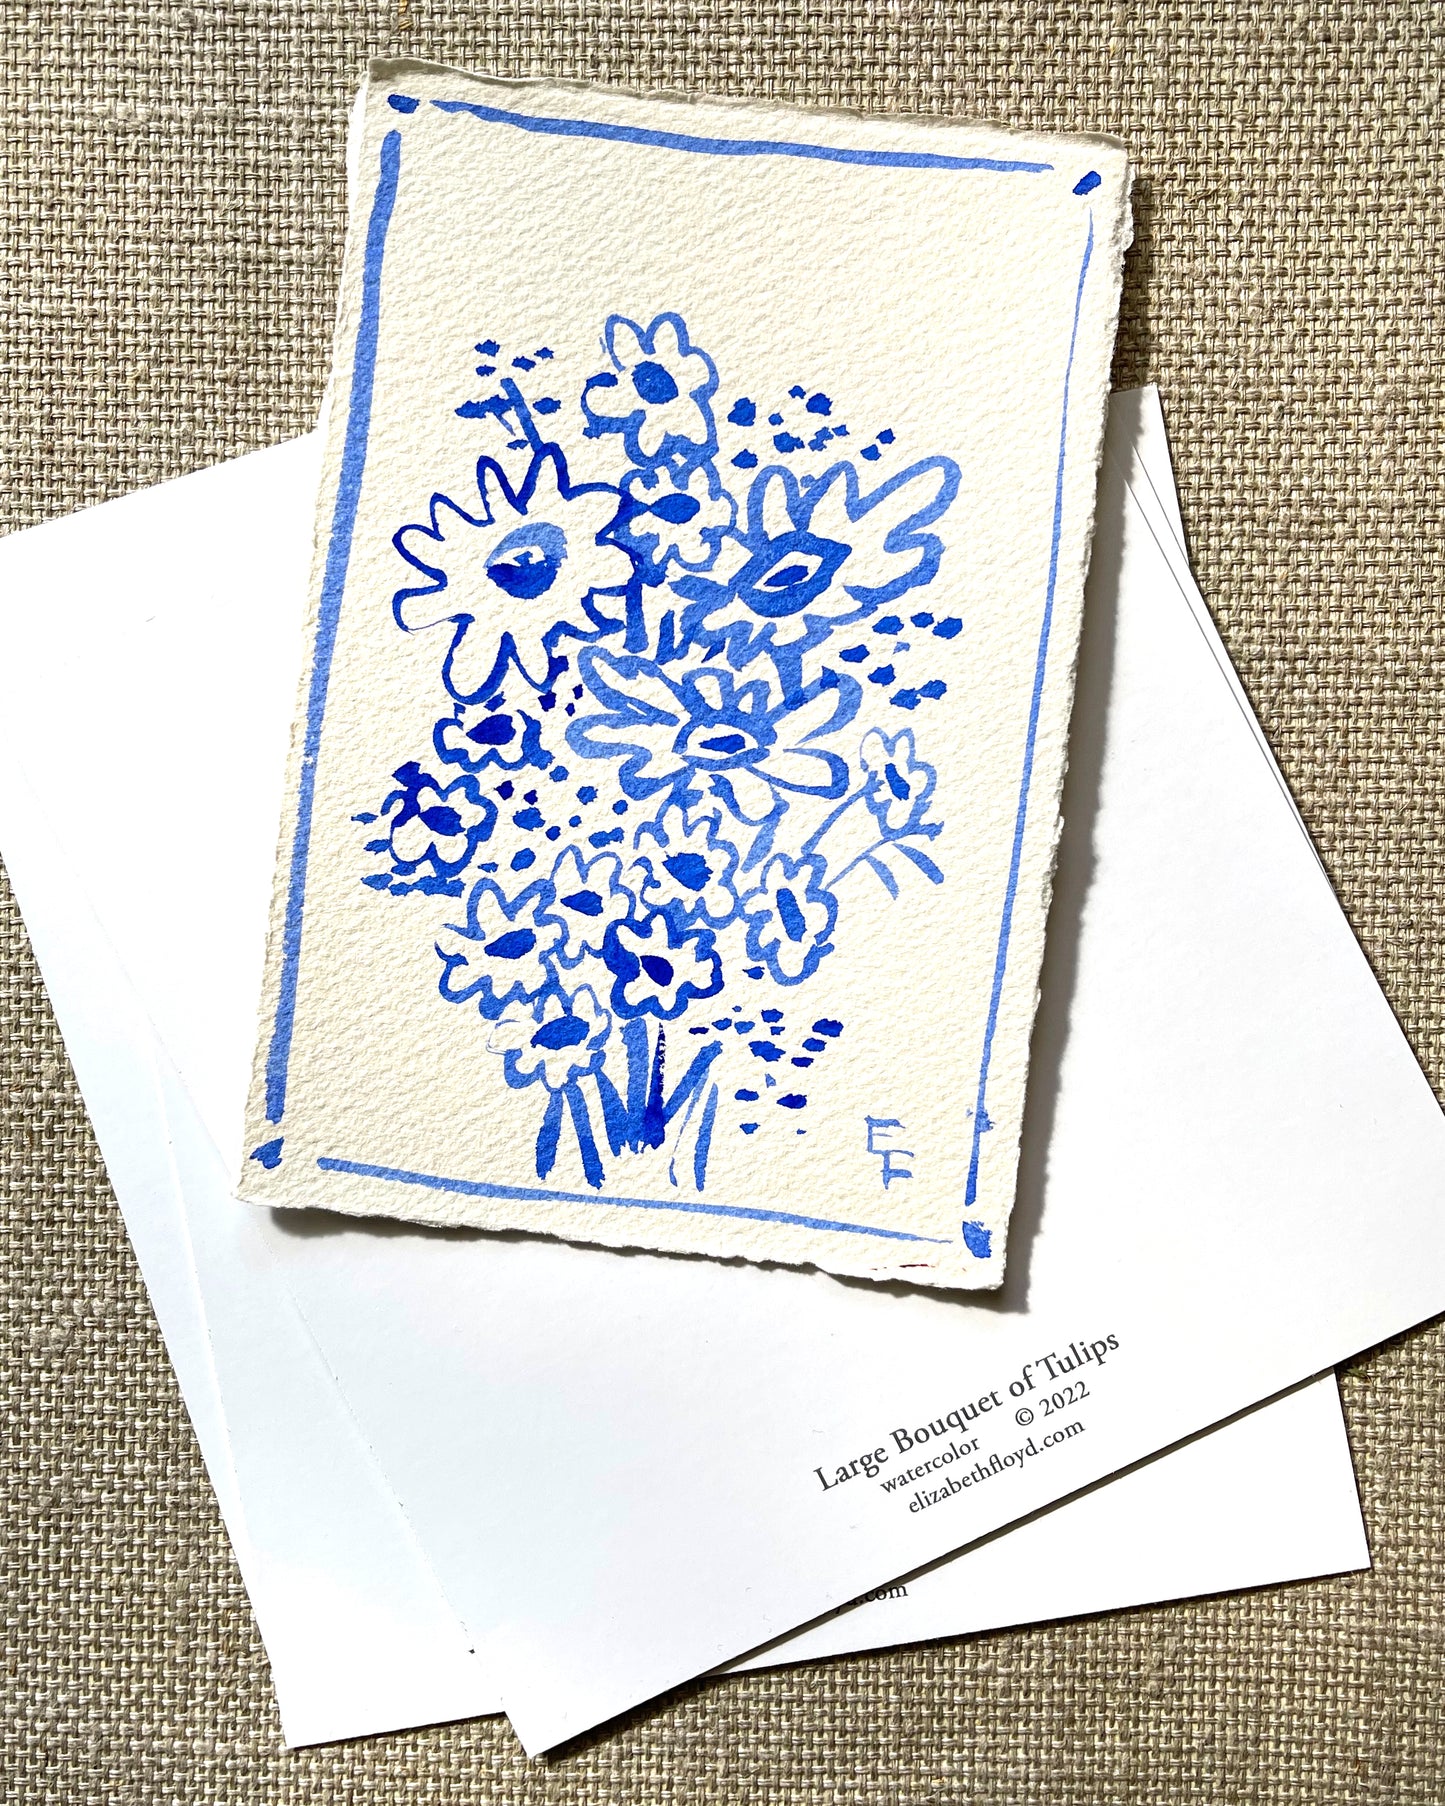 Spring Limited Edition - Art Card Club